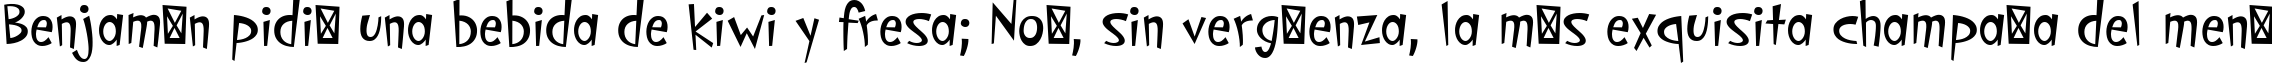 Пример написания шрифтом PFCosmonutPro-Regular текста на испанском